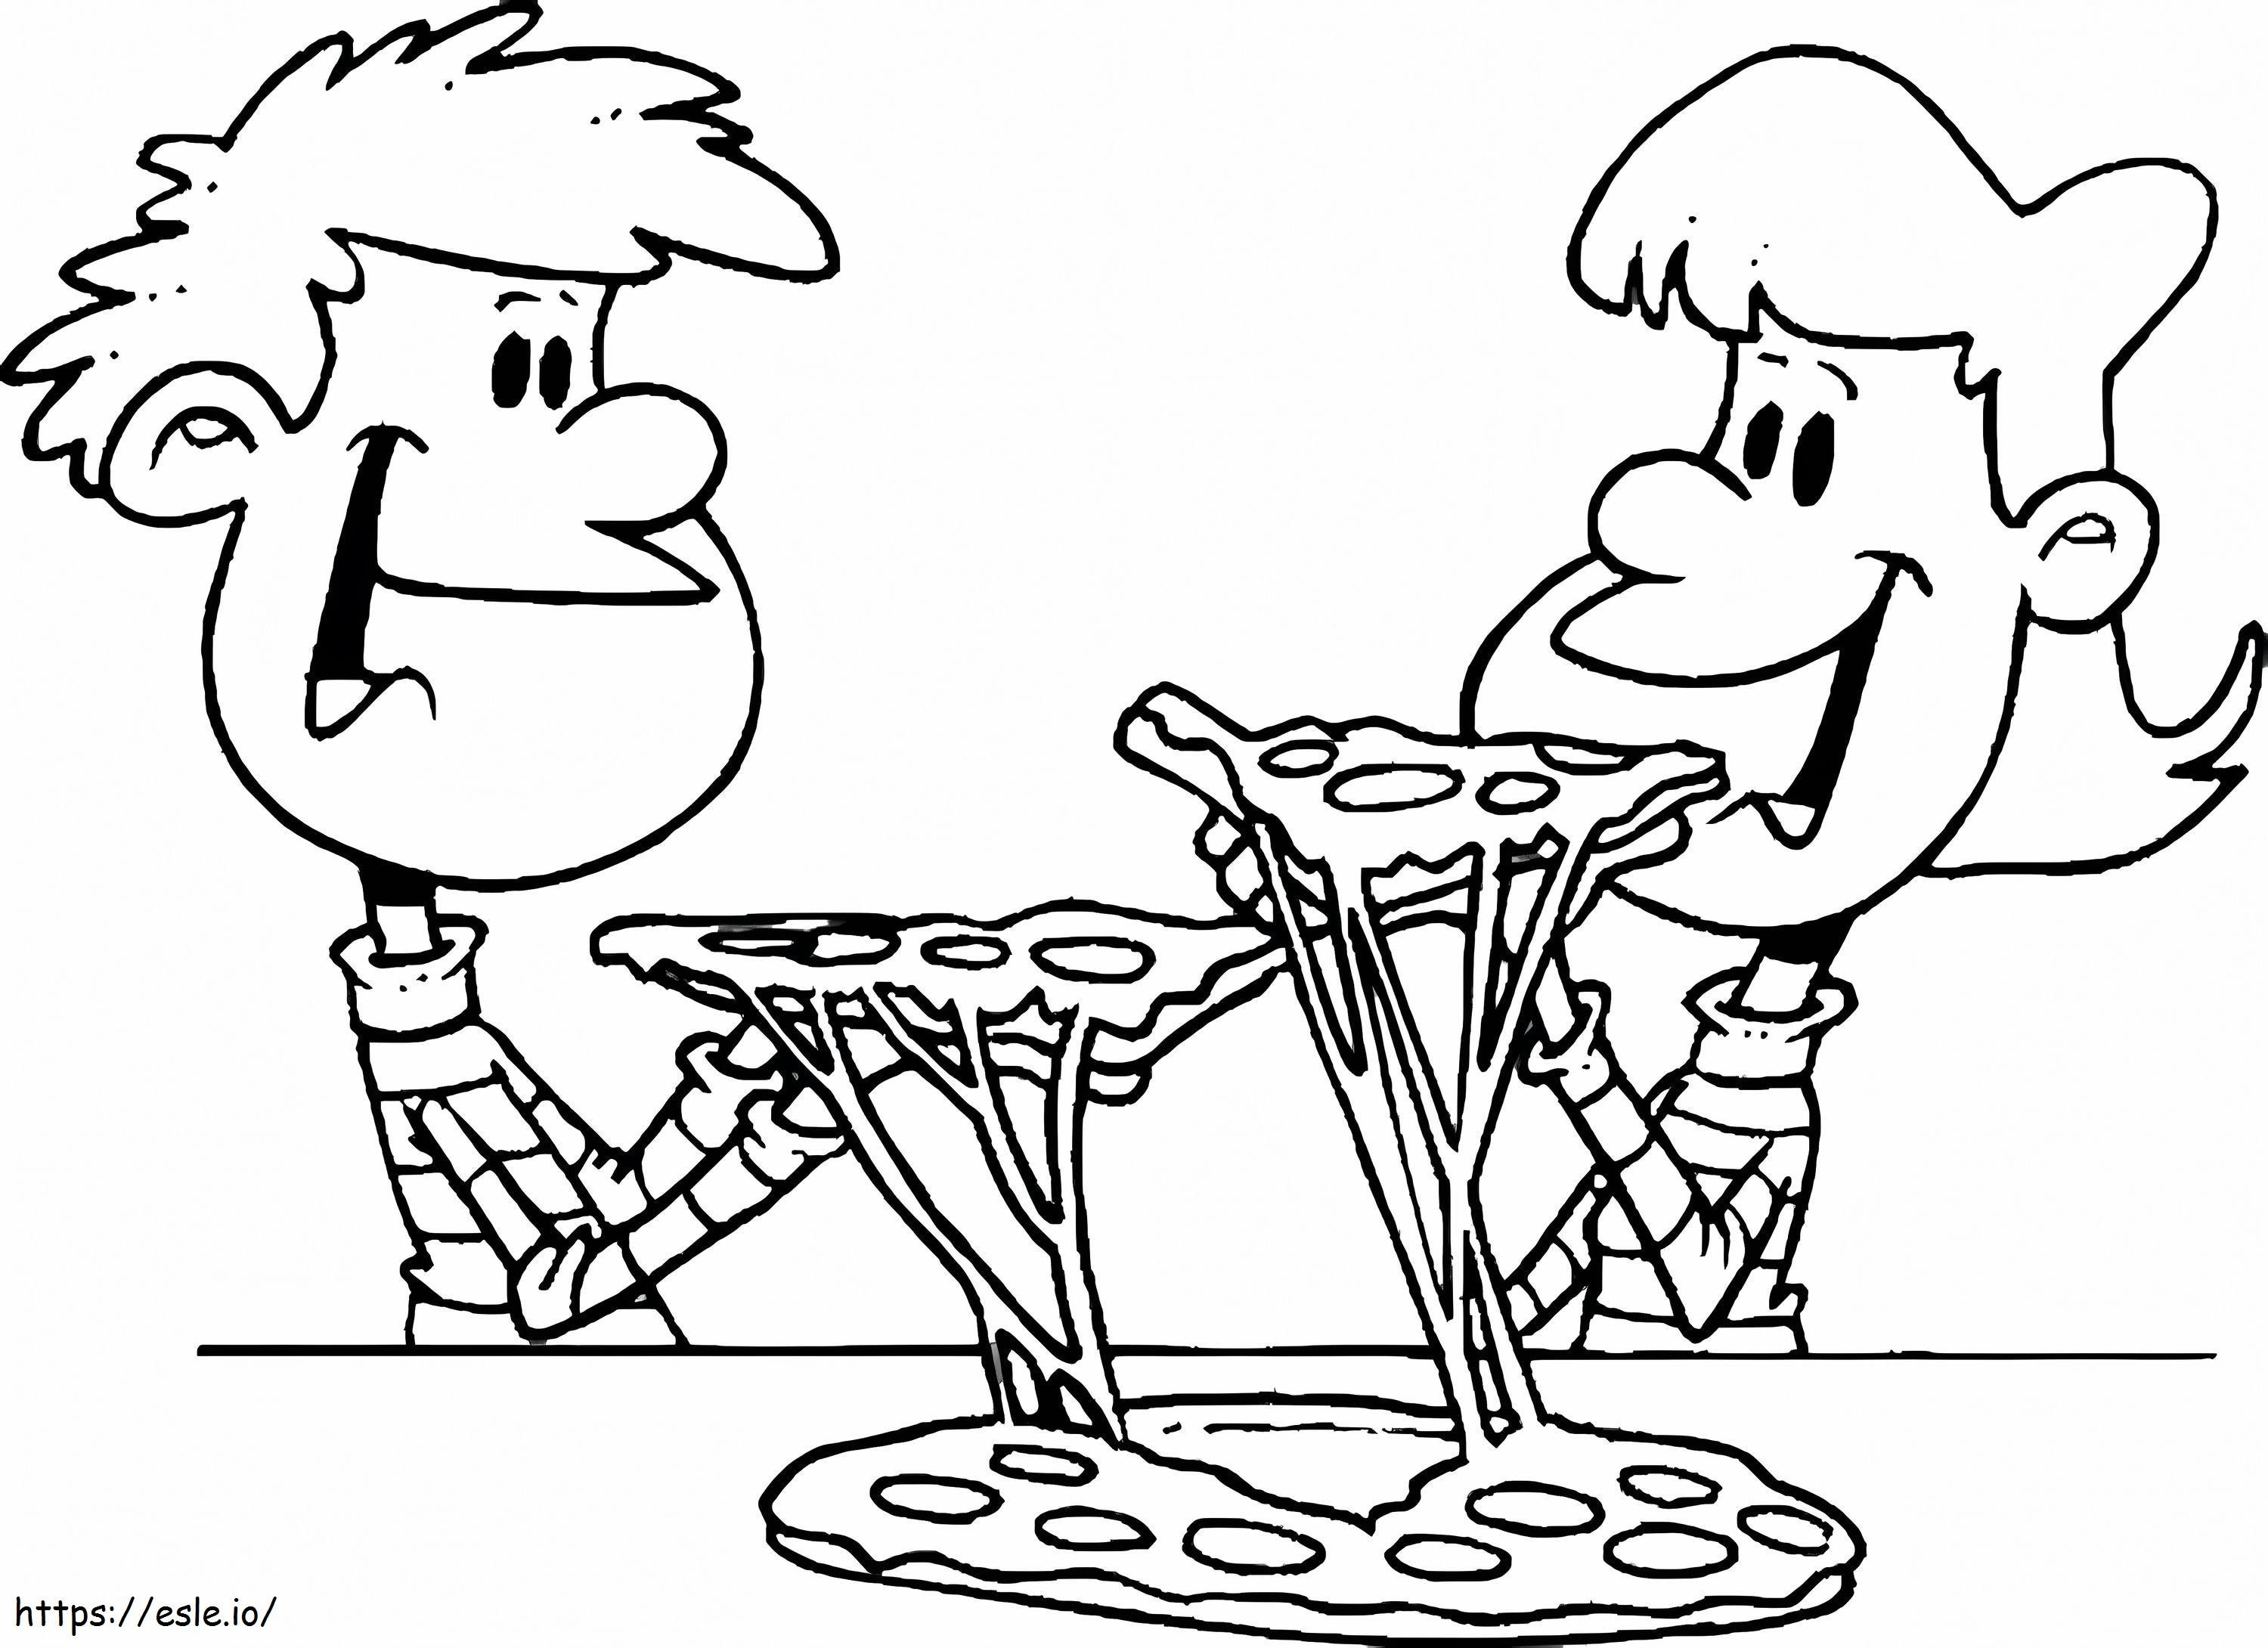 Dwoje dzieci jedzących pizzę kolorowanka